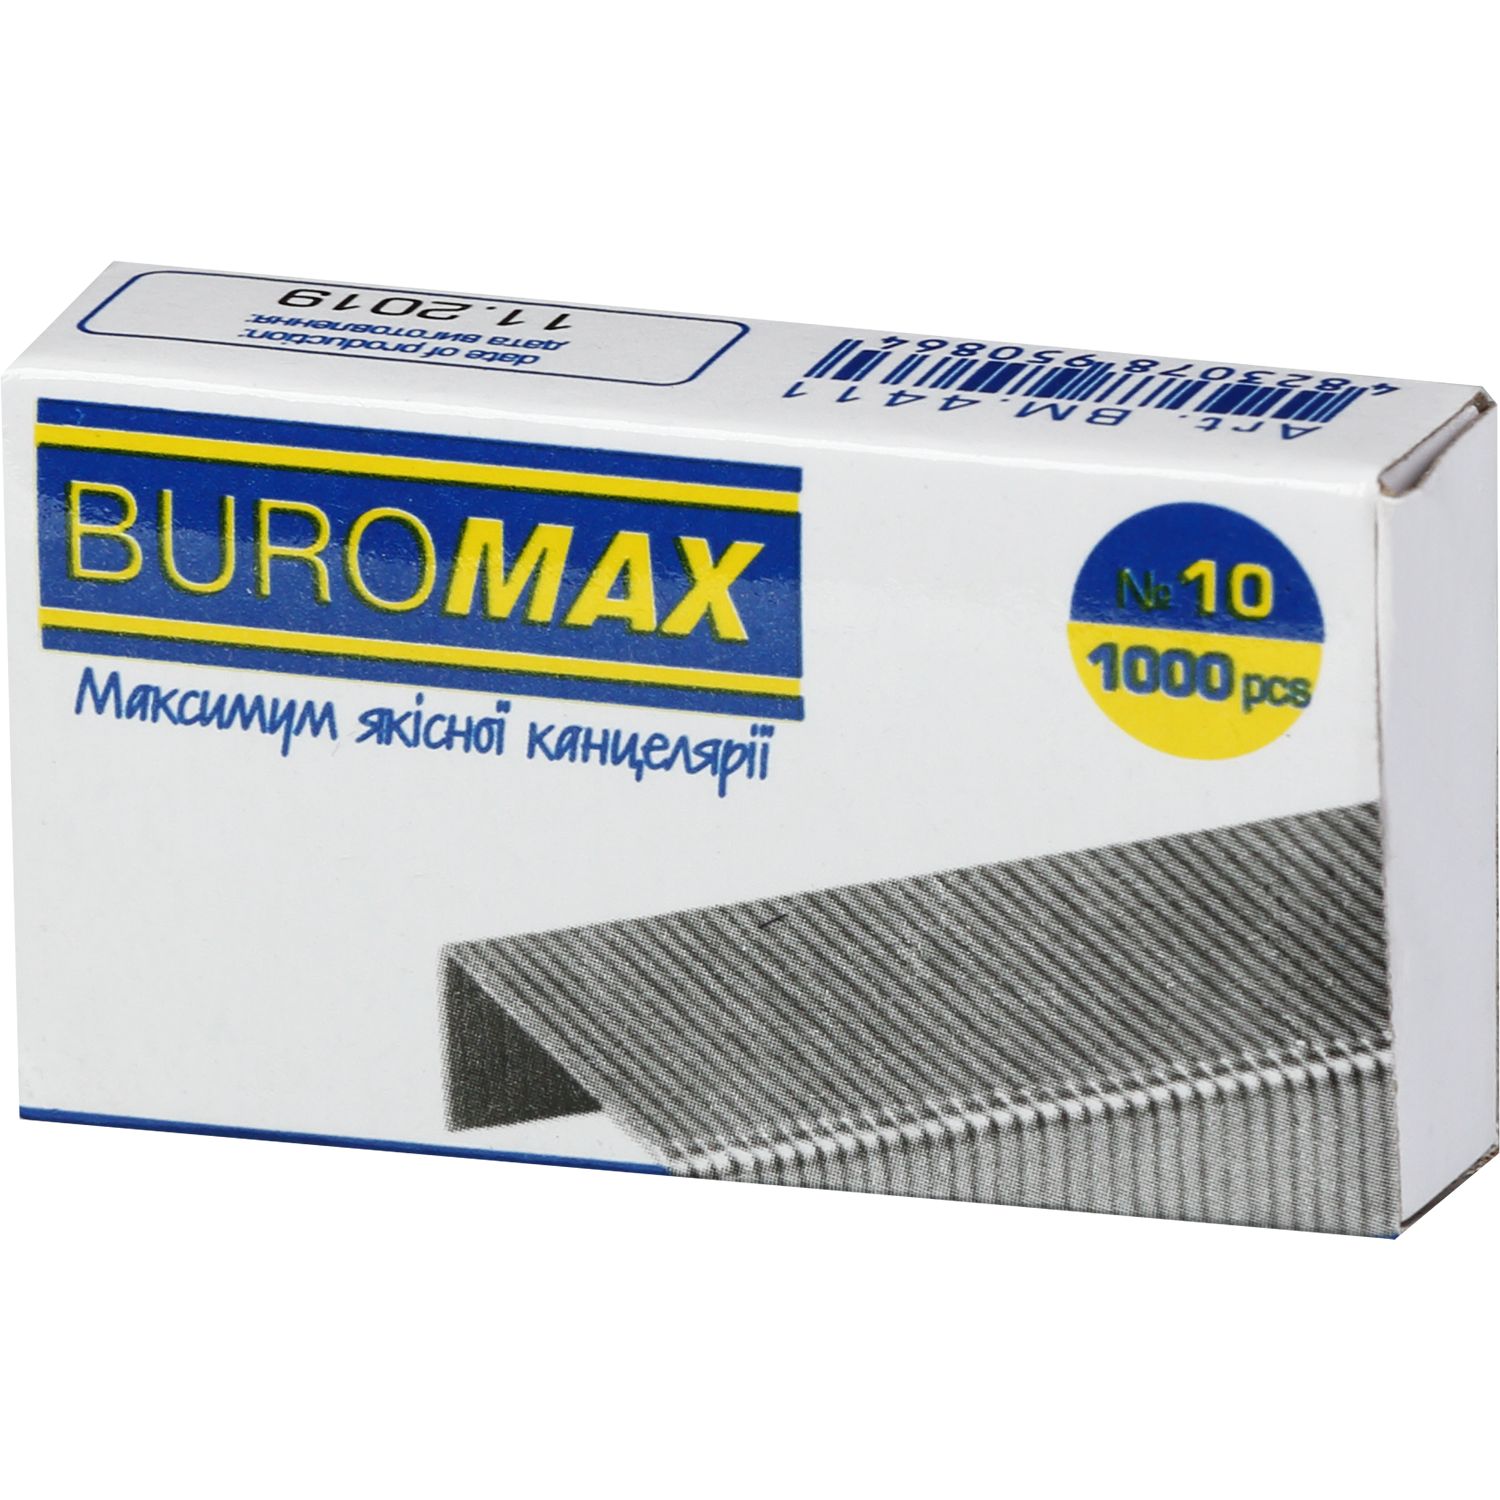 Скобы для степлеров Buromax Люкс №10 1000 шт. (BM.4411) - фото 1